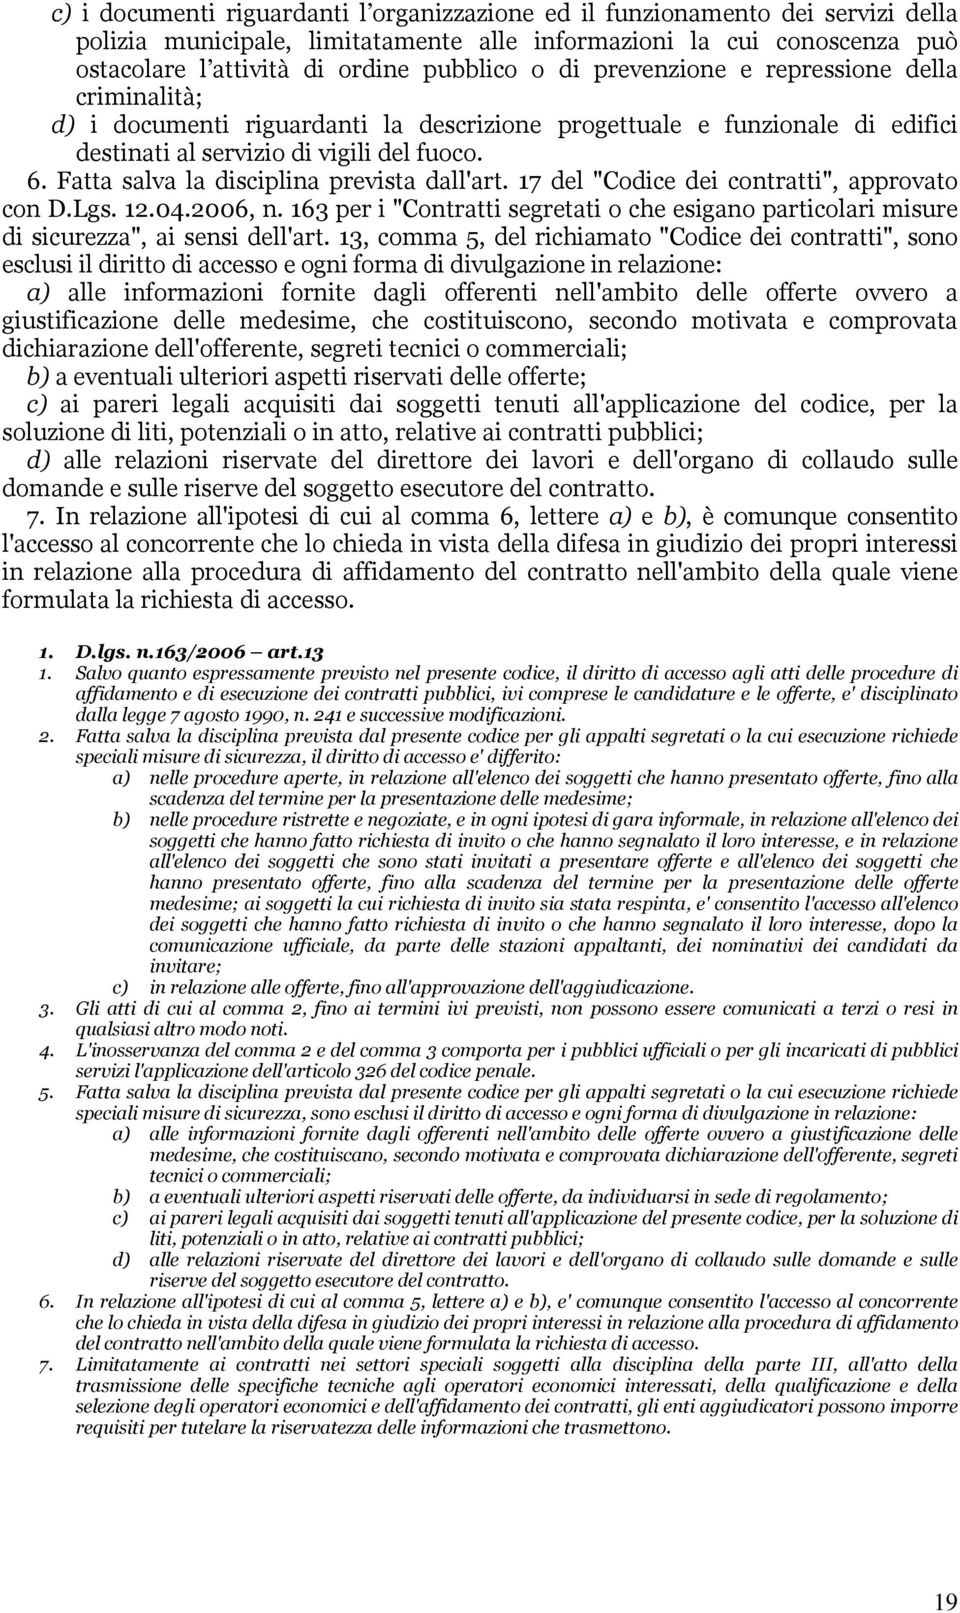 Fatta salva la disciplina prevista dall'art. 17 del "Codice dei contratti", approvato con D.Lgs. 12.04.2006, n.